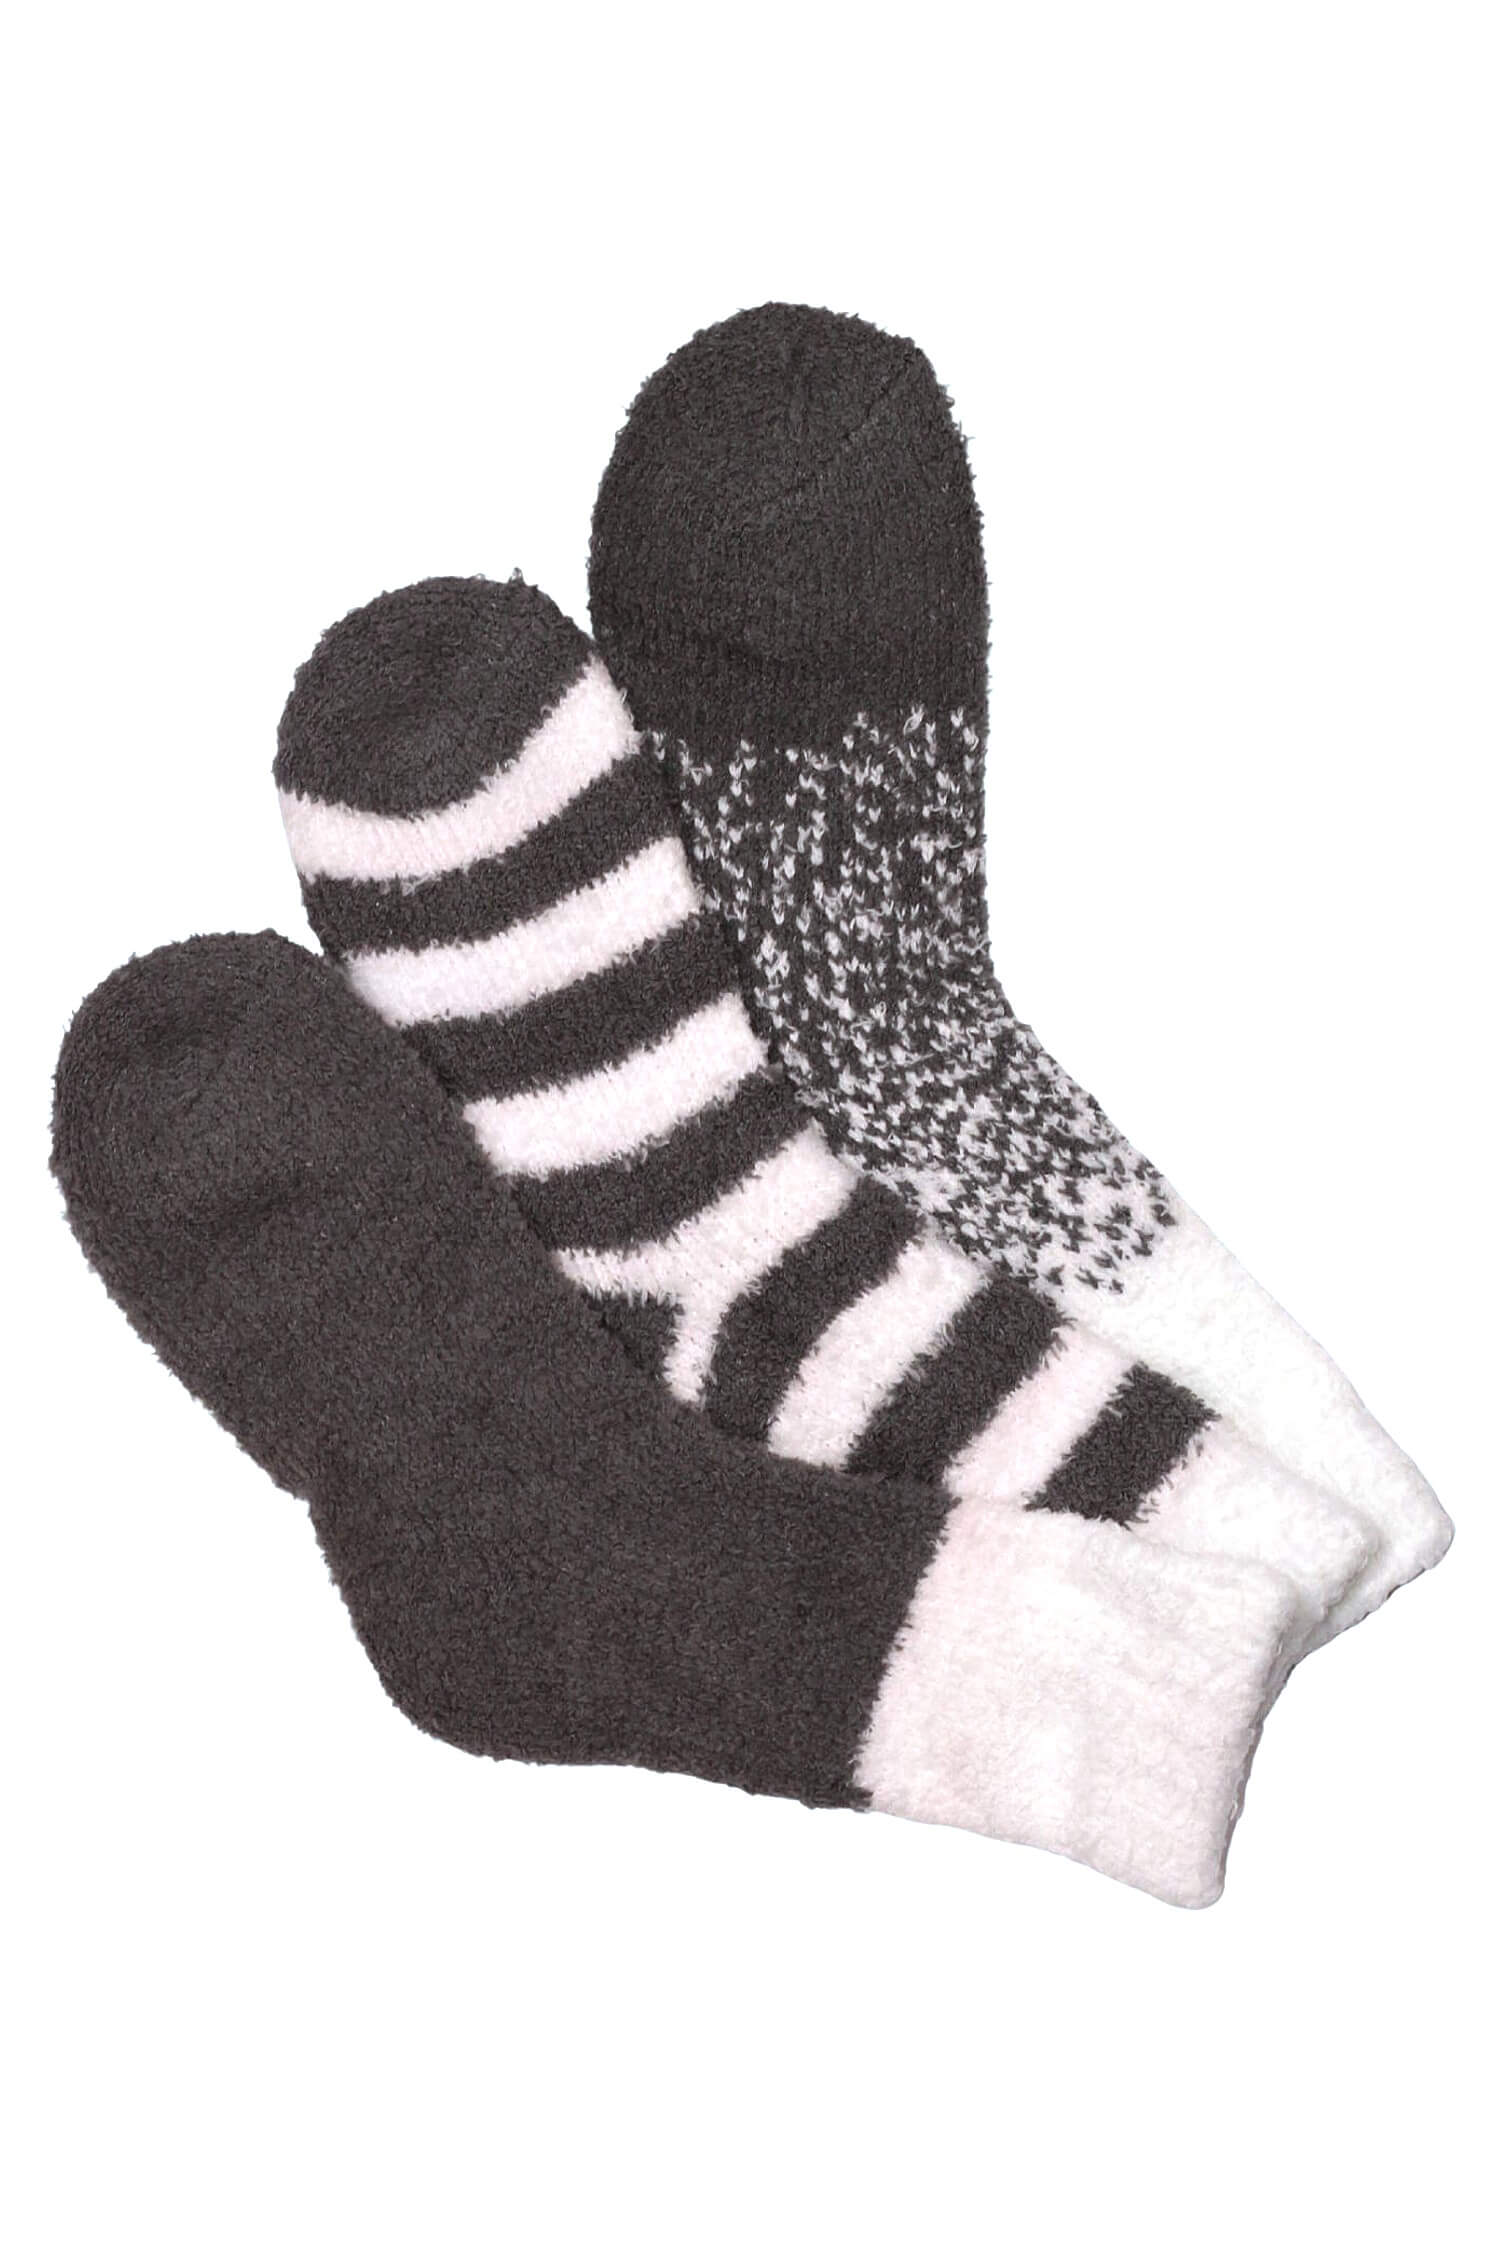 Emi Grey dámské žinylkové ponožky H5101B 35-38 šedá